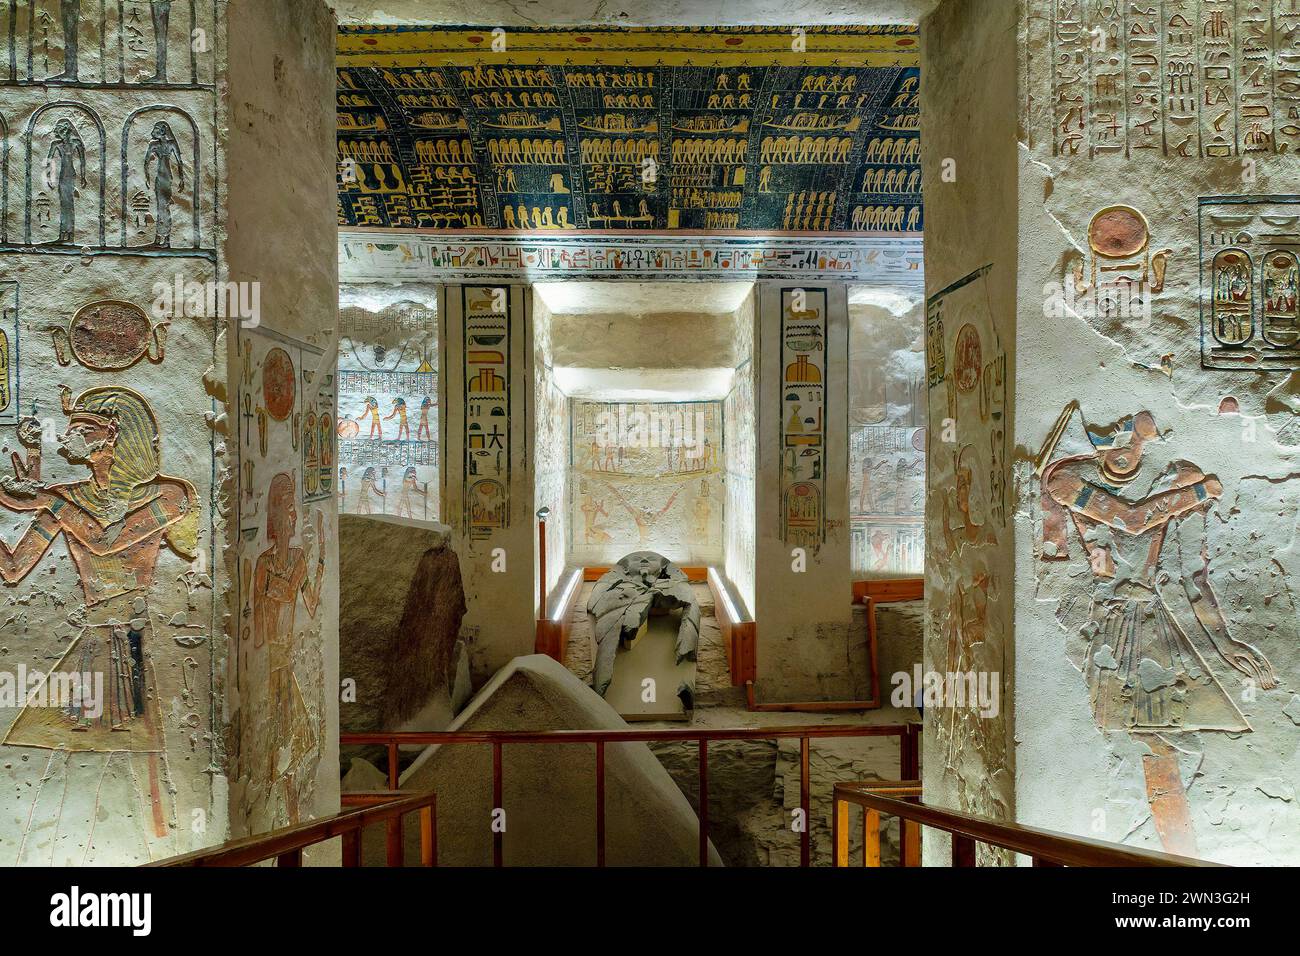 Sarcofago e stanza dipinta a Ramsete V e vi (Ramsete V e vi) tomba nella Valle dei Re, sponda occidentale di Luxor, Egitto Foto Stock